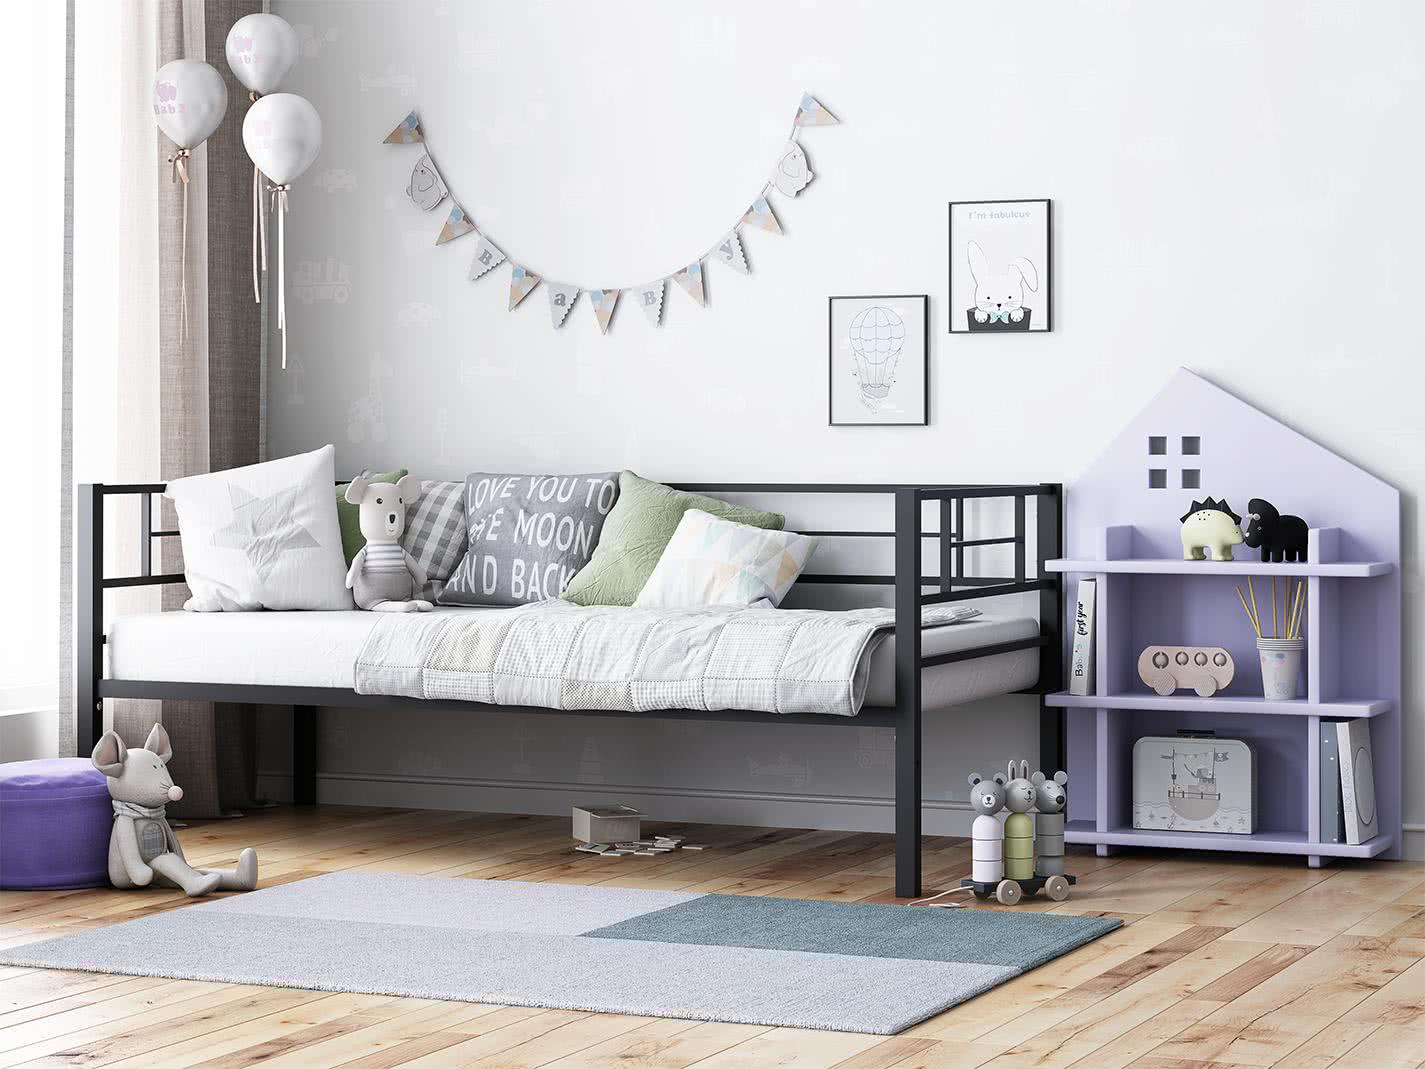 Купить кровать Формула Мебели Кровать Формула мебели Лорка, Черный Черный дешево на официальном сайте